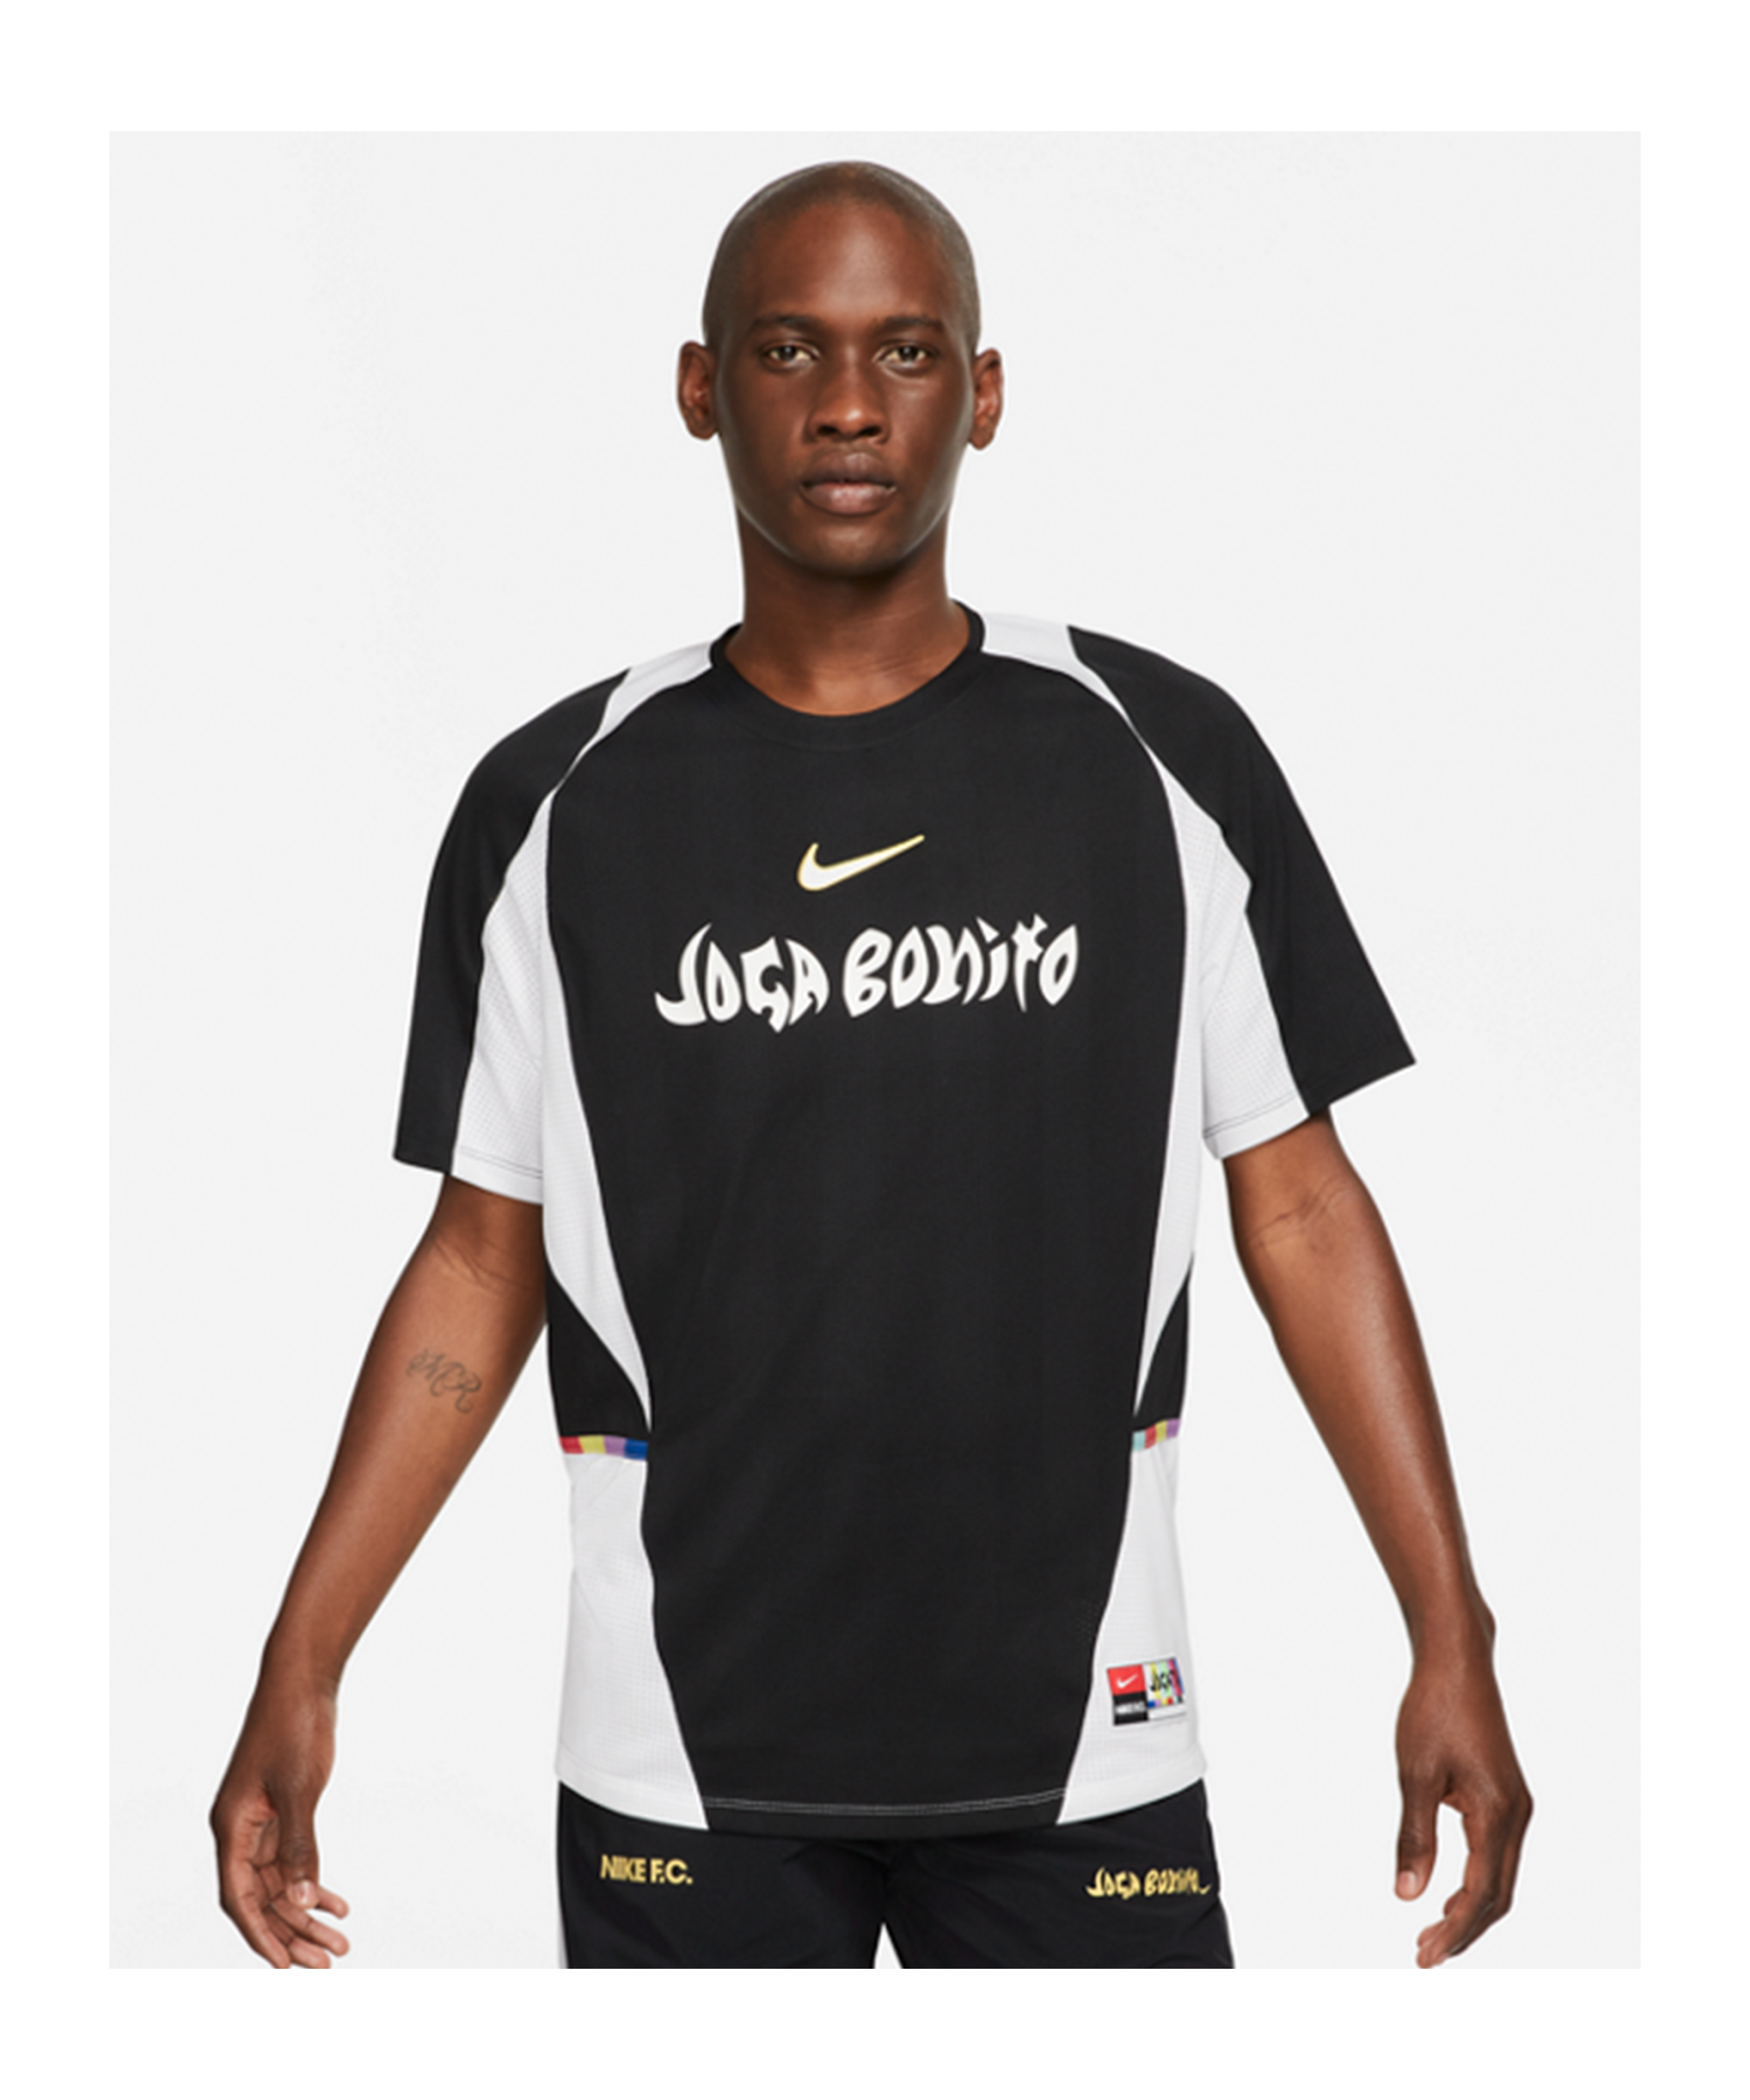 Ik was verrast bibliothecaris kom tot rust Nike F.C. Joga Bonito Home Jersey T-Shirt - Black